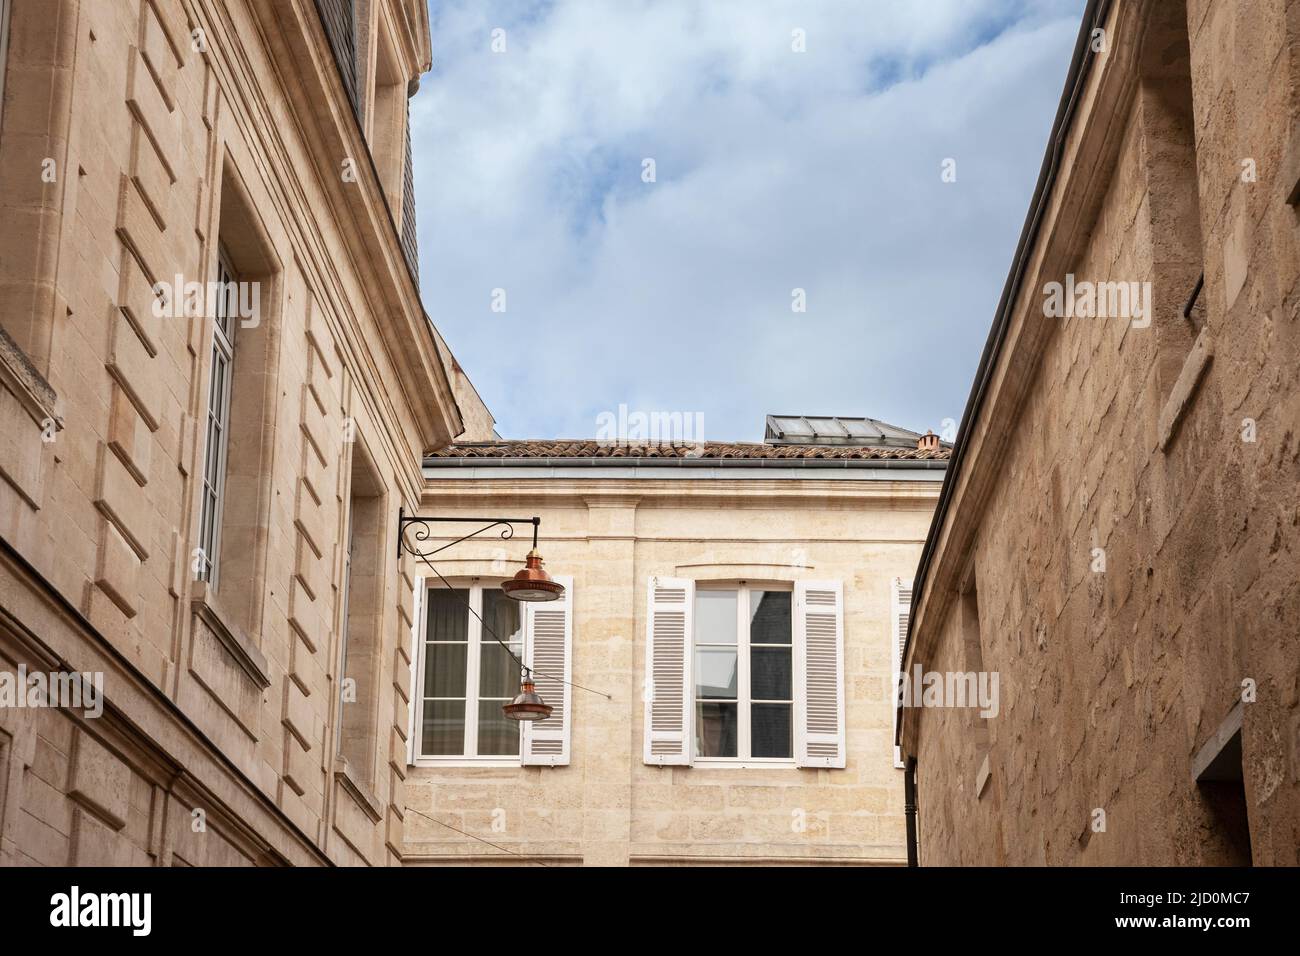 Bild von einem typischen Gebäude des Stadtzentrums von Bordeaux, Frankreich Serbien, mit geschlossenen Jalousien auf einem Gebäude für Wohnzwecke. Stockfoto